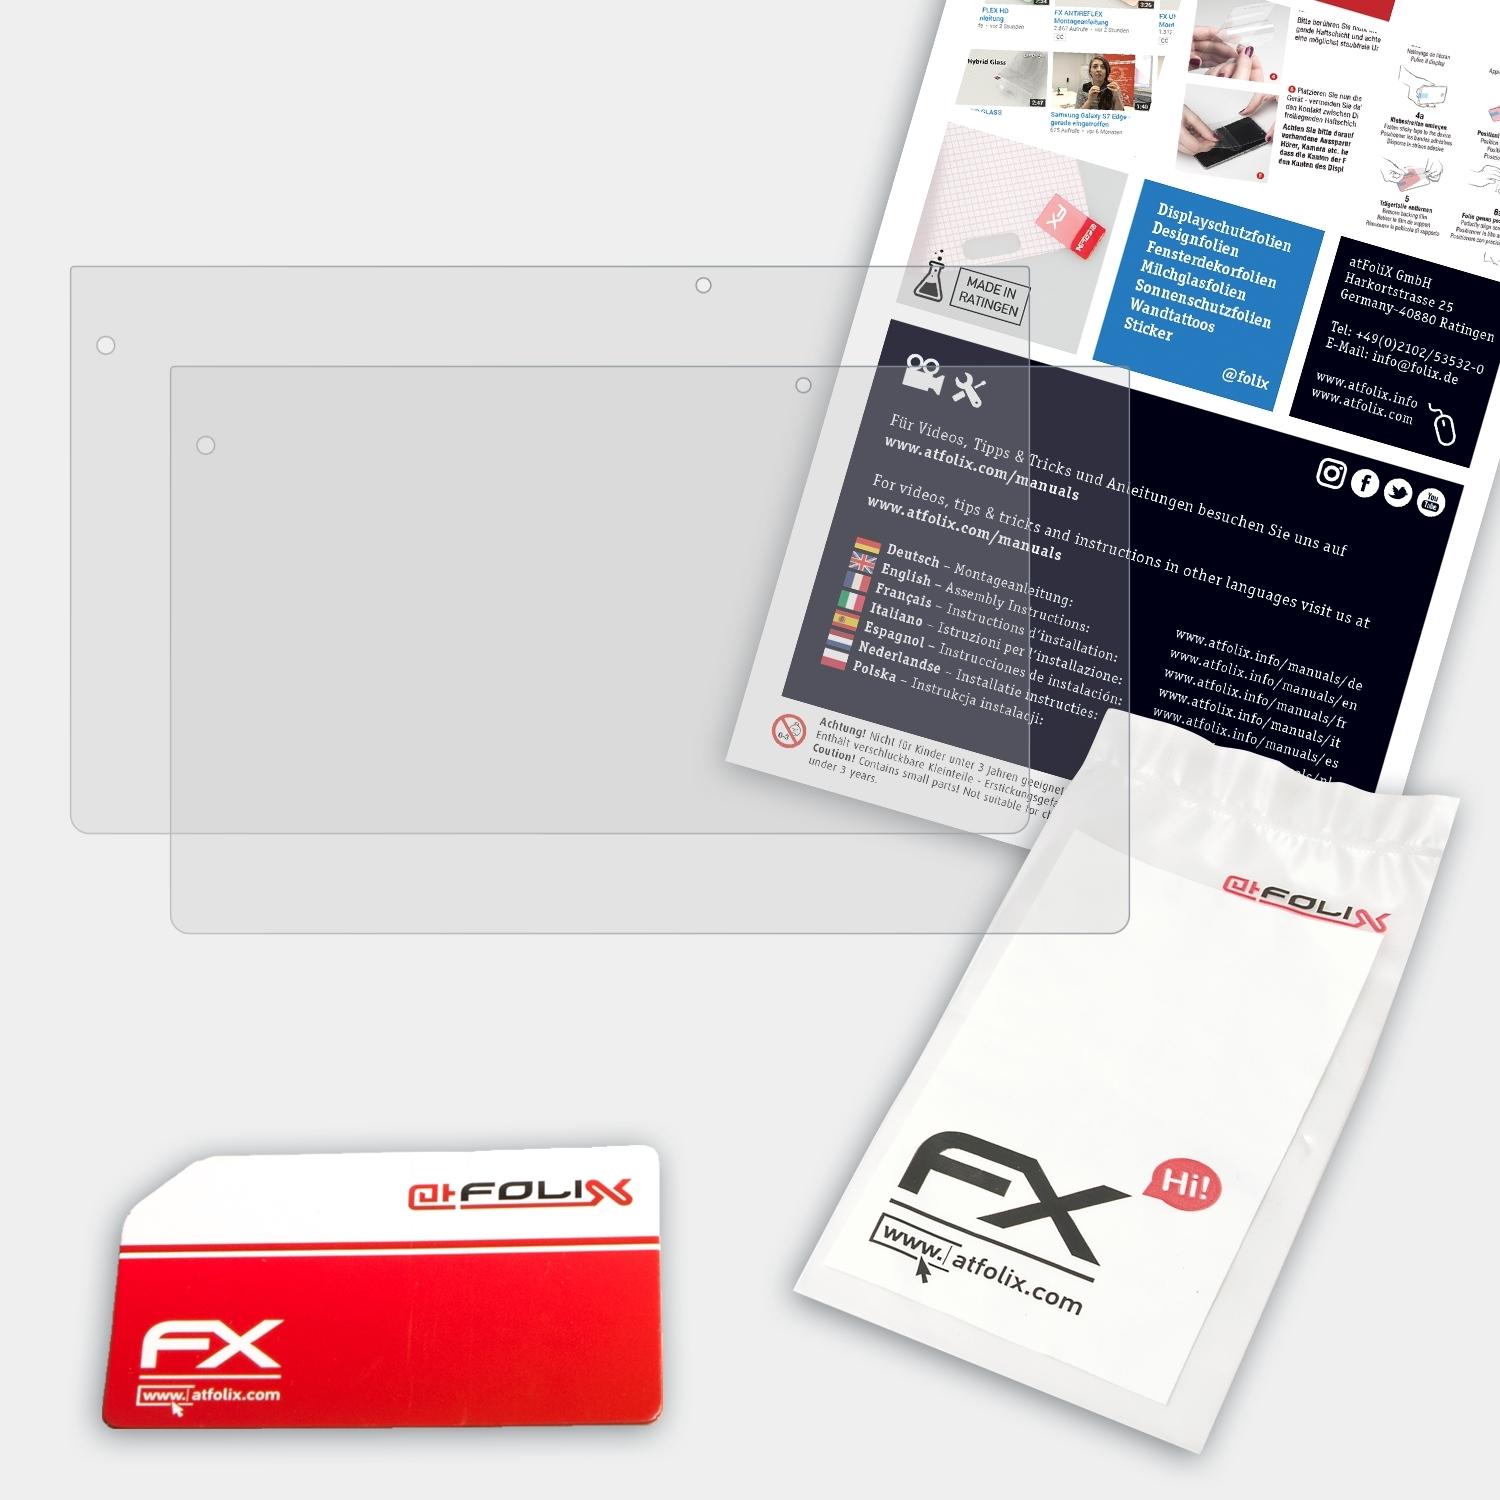 ATFOLIX 2x FX-Antireflex Displayschutz(für Medion AKOYA P2212T (MD99360))